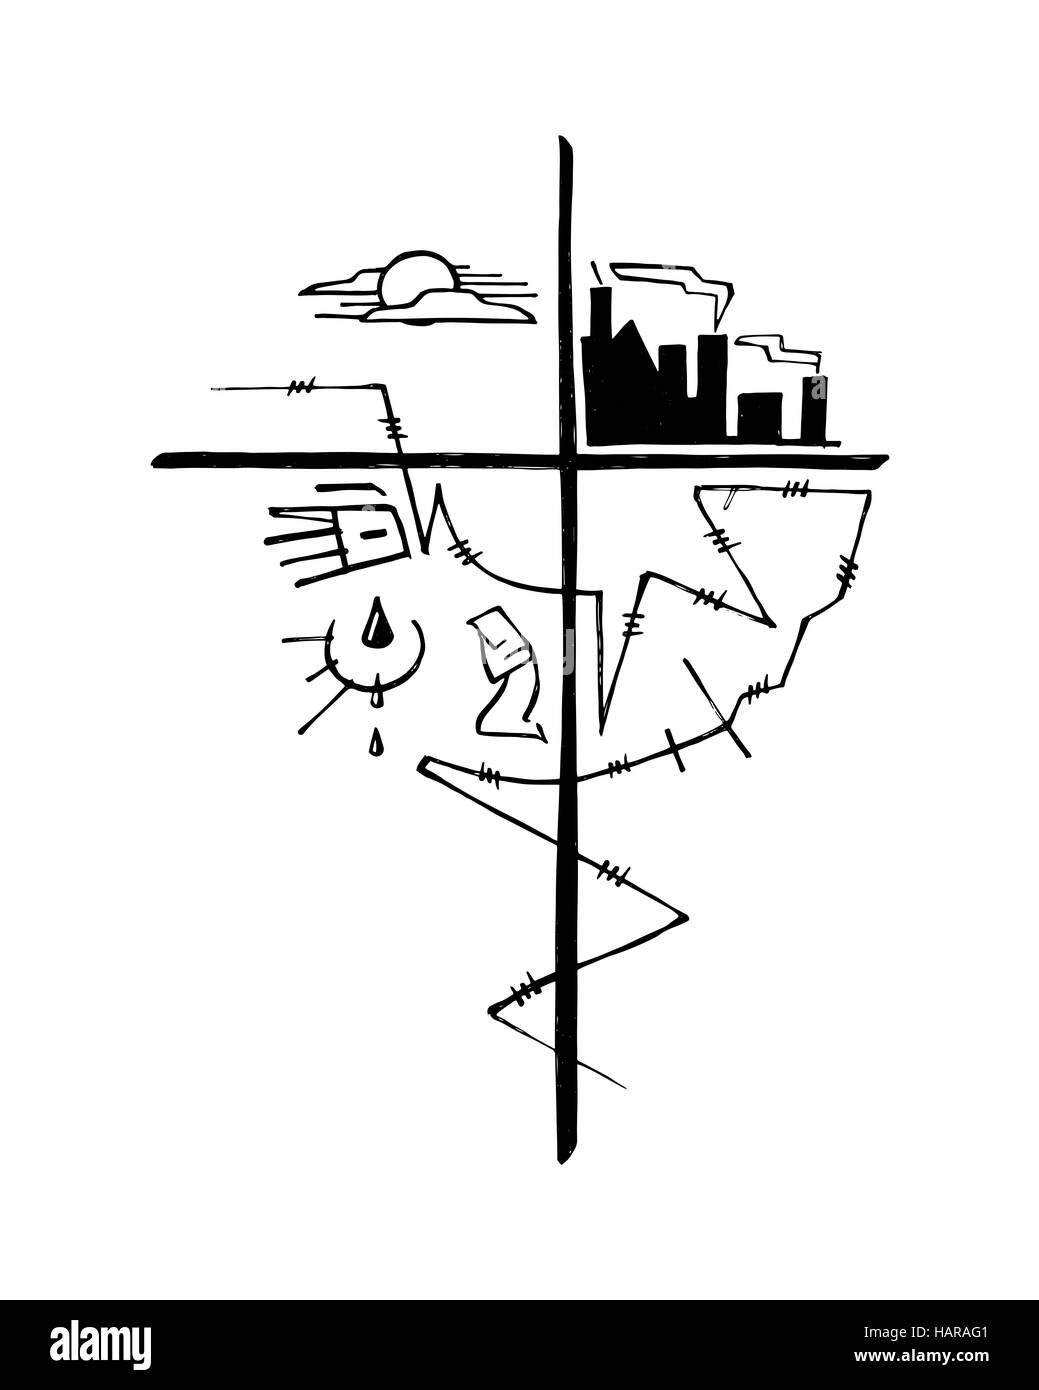 Ilustración vectorial dibujada a mano o un dibujo de una cruz y otros símbolos religiosos que representan algunos de los problemas del mundo Foto de stock